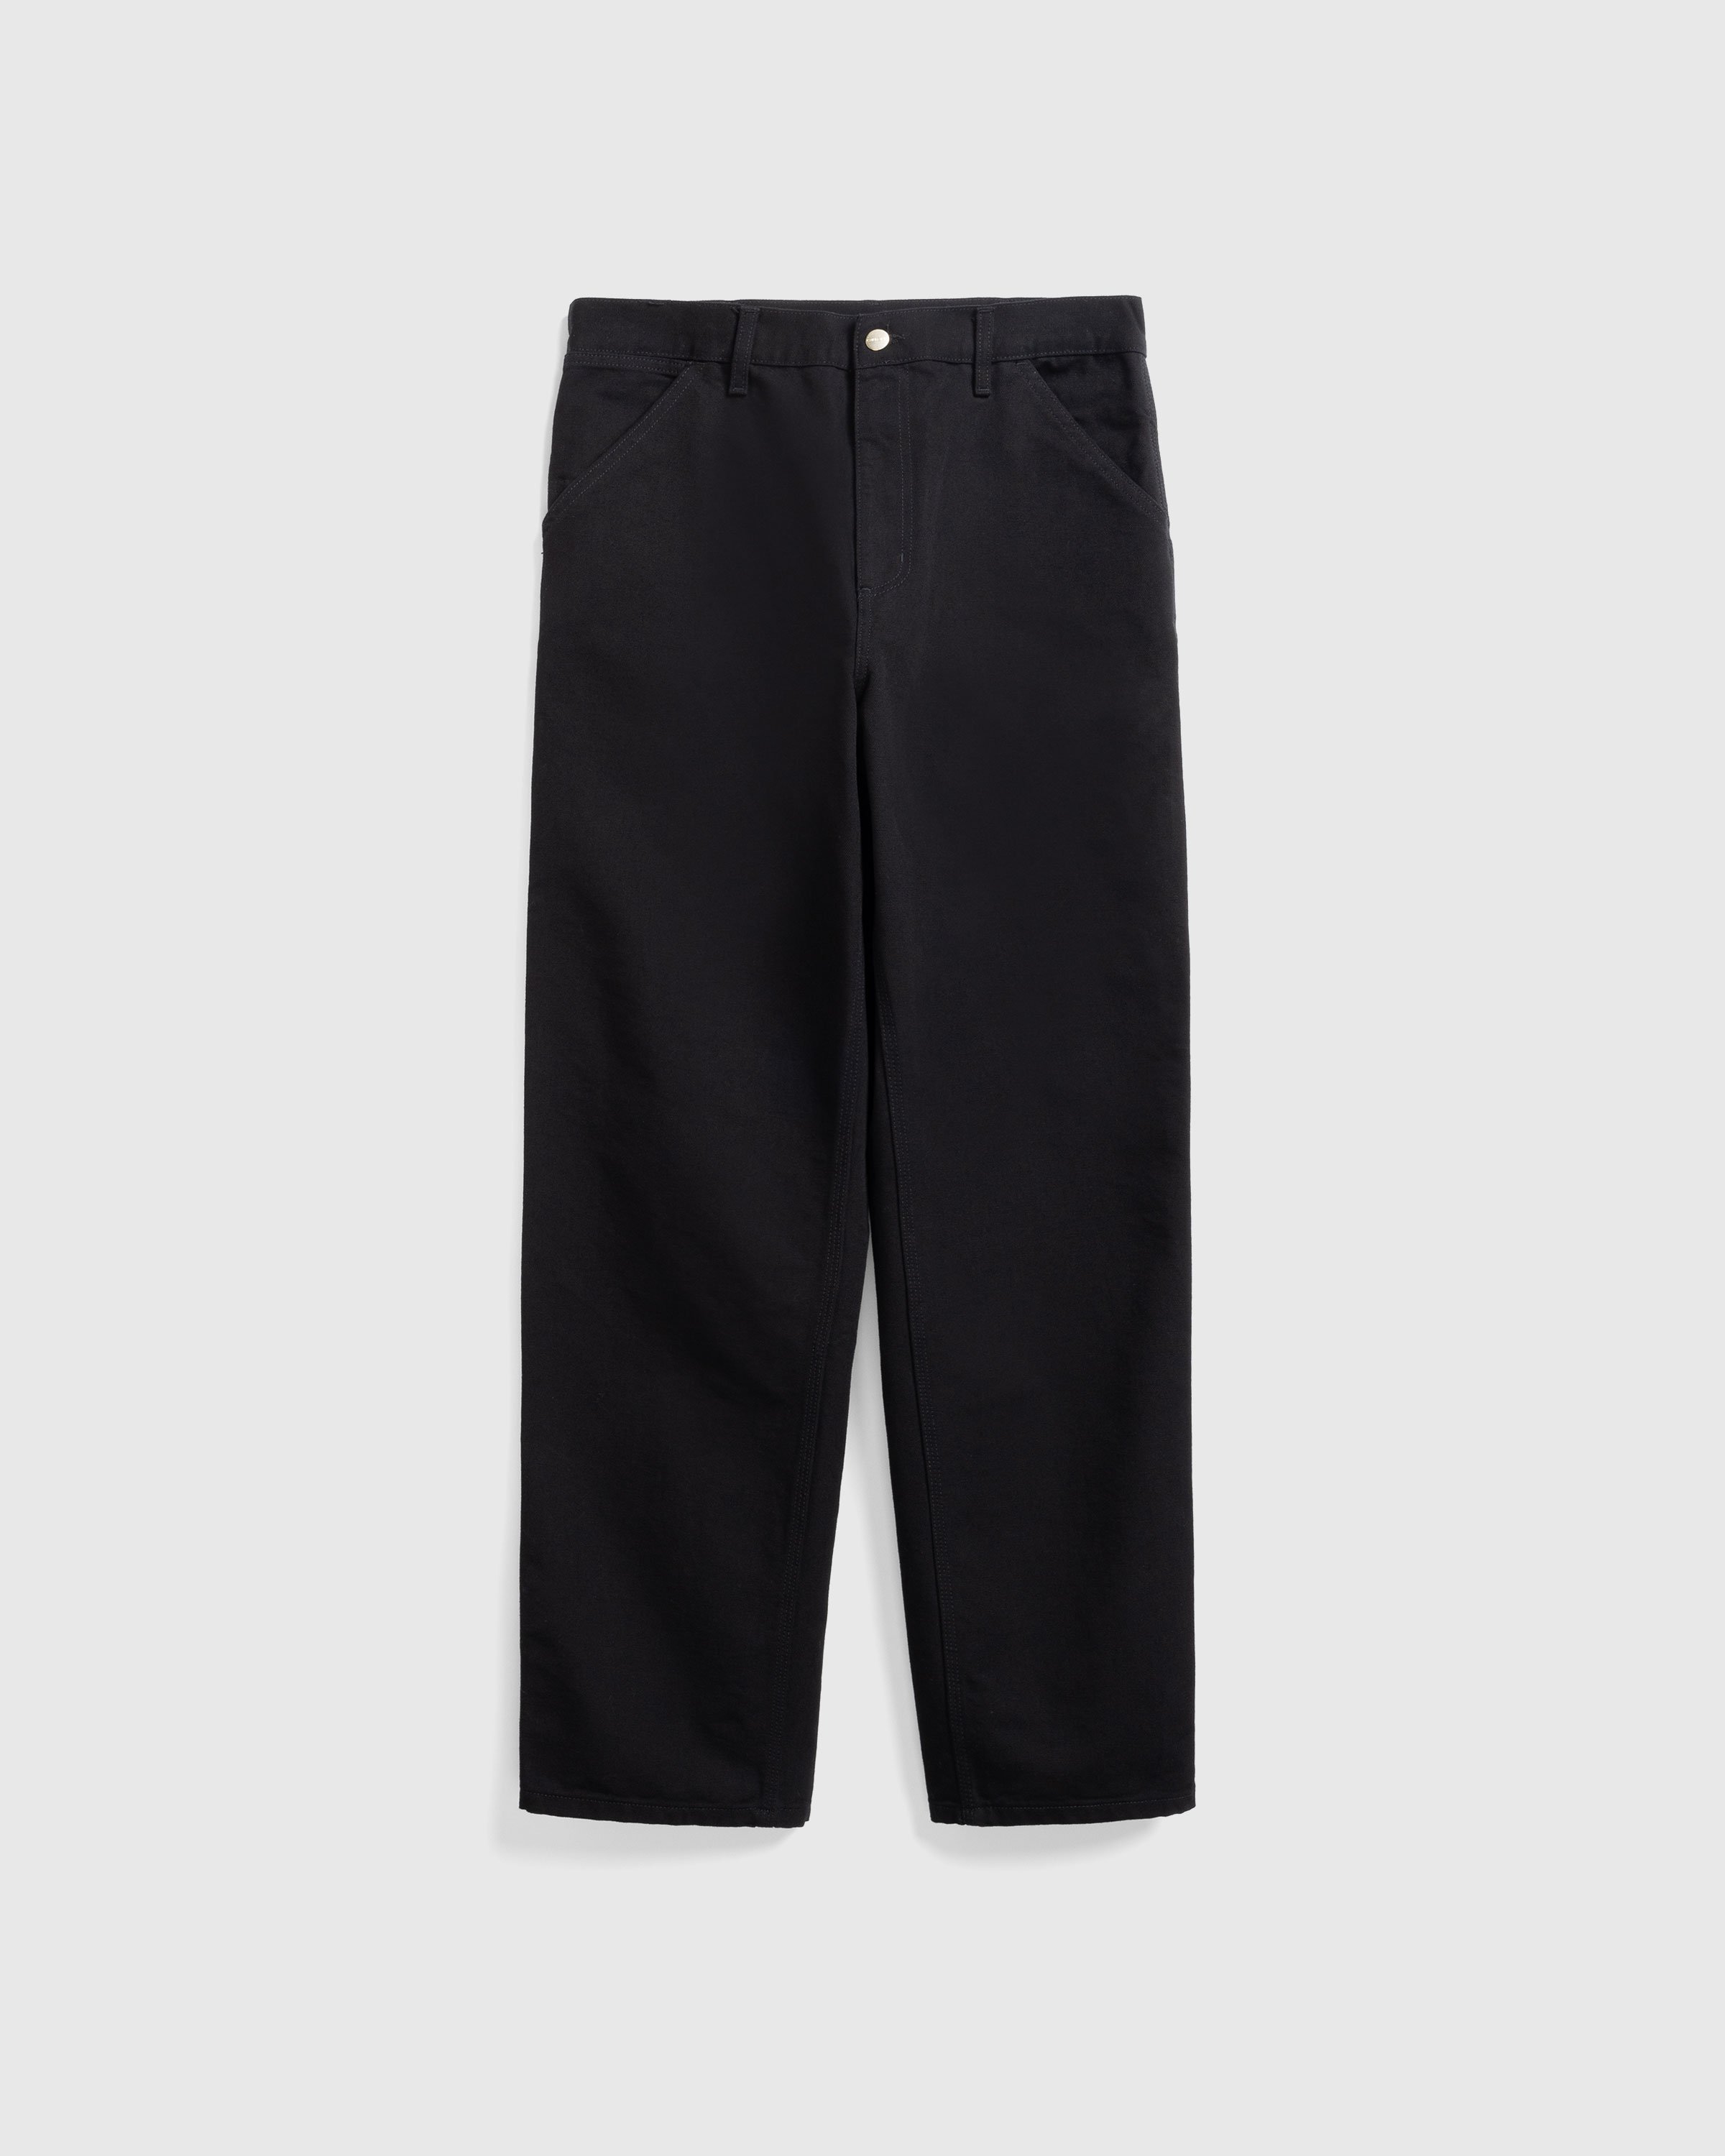 Carhartt WIP - Single Knee Pant Black /rinsed - Clothing - Black - Image 1